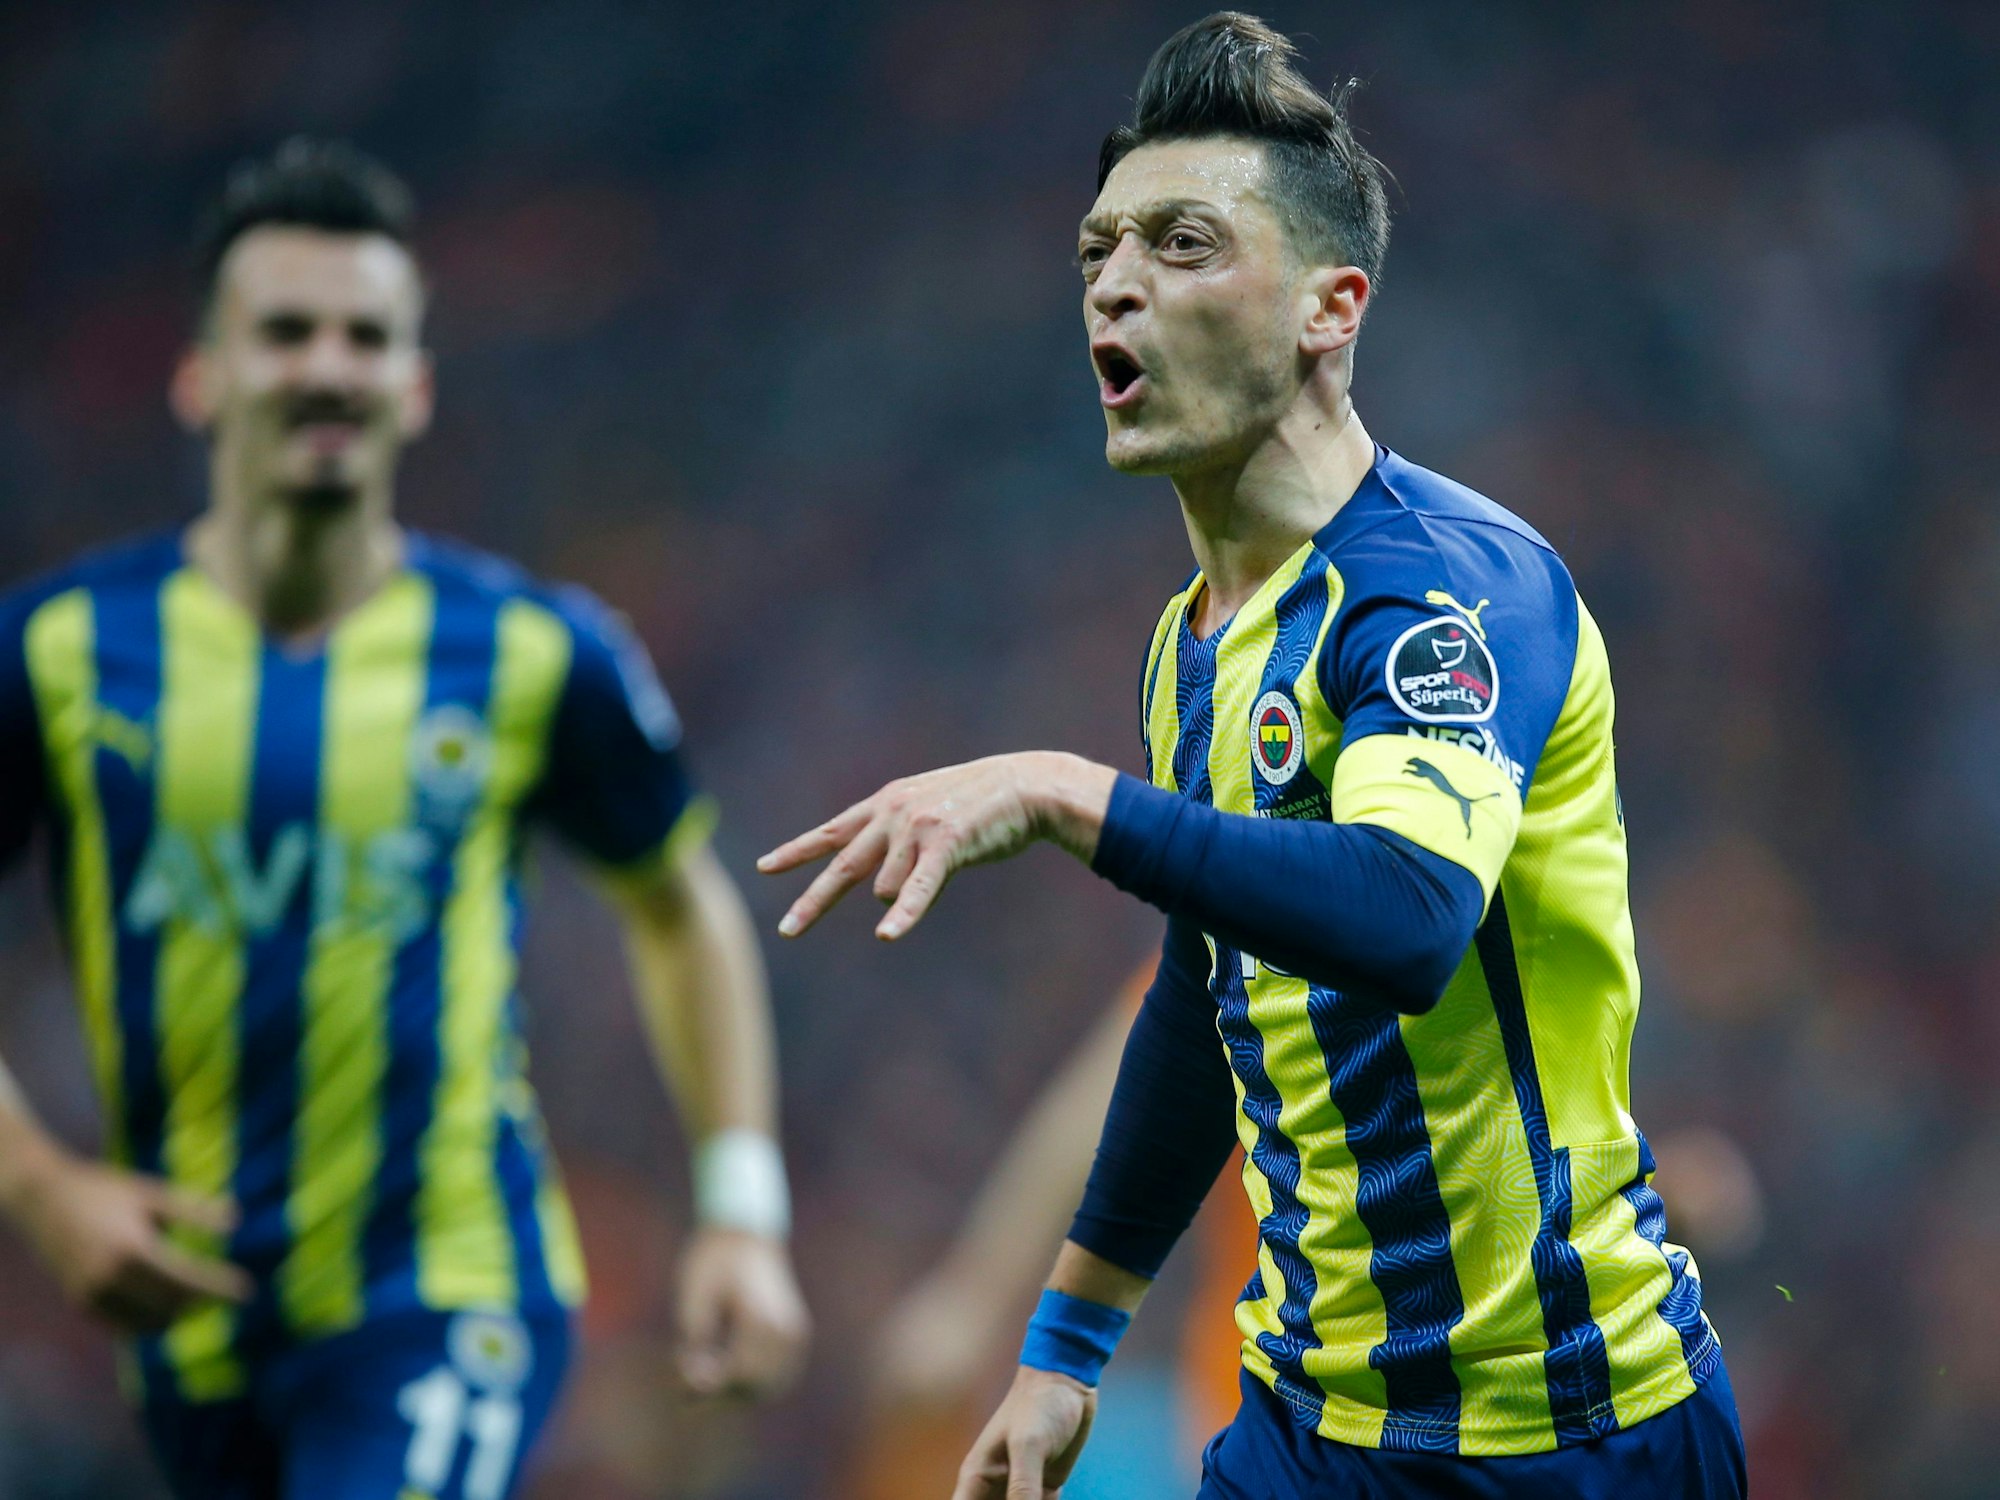 Fenerbahce's Mesut Özil feiert seinen Ausgleichstreffer beim 2:1-Derbysieg gegen Galatasaray Istanbul